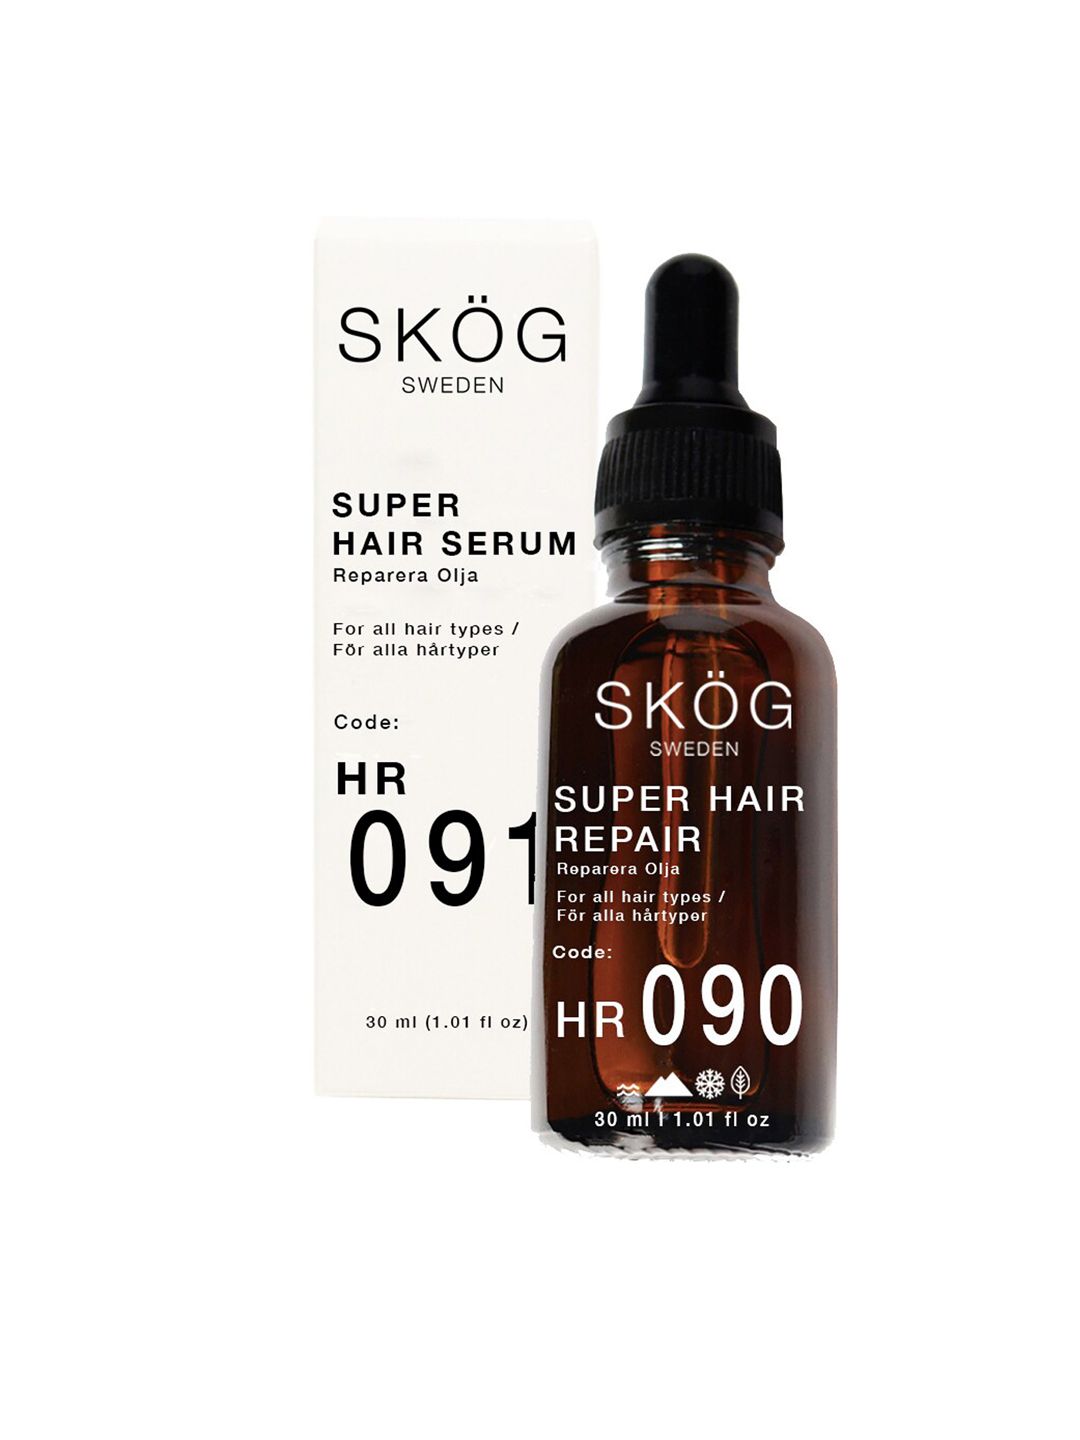 SKOG Unisex Super Hair Repair Serum - 30 ml Price in India